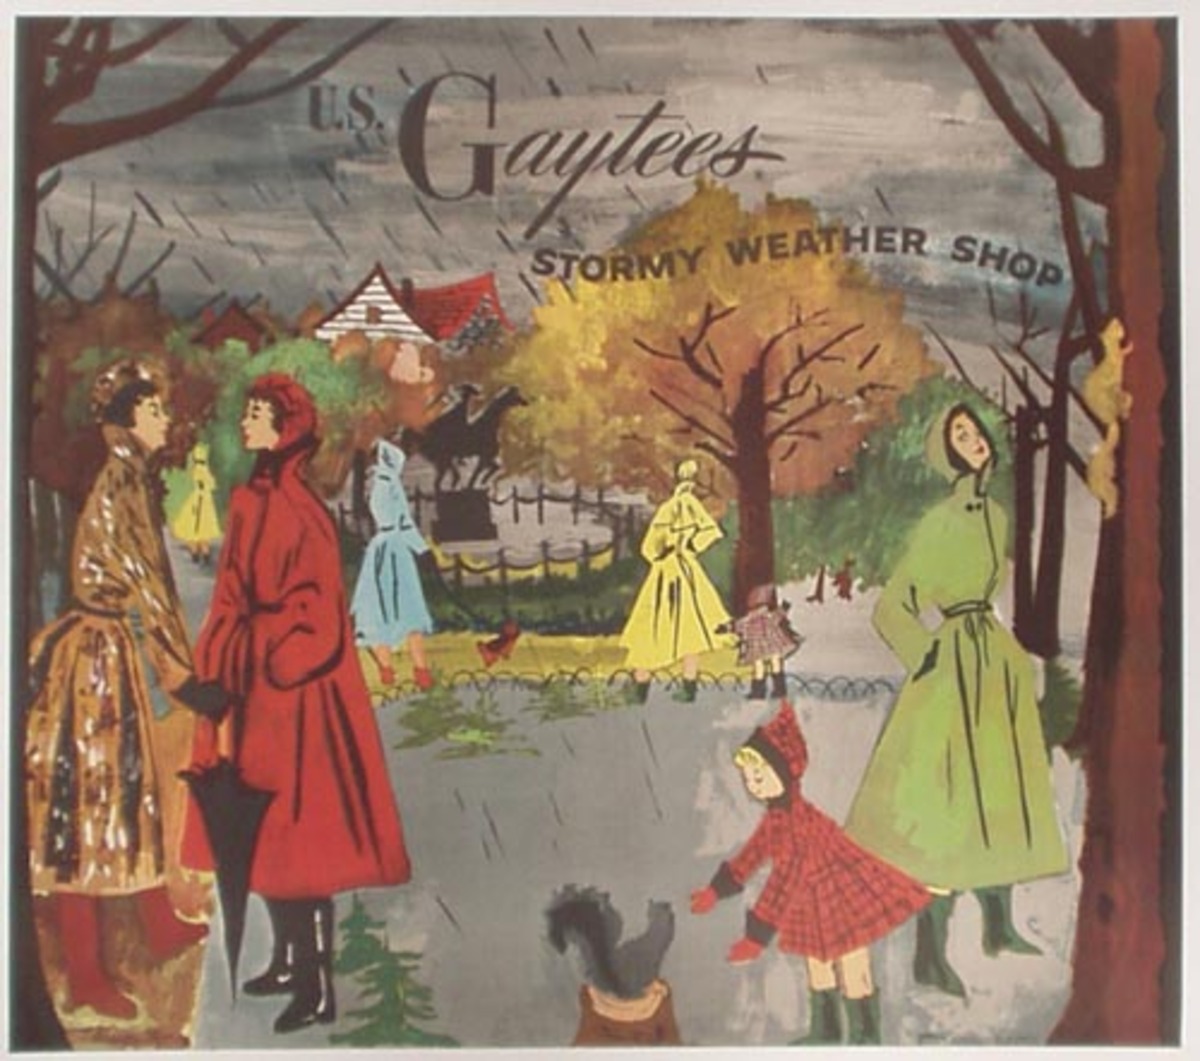 Original US Gaytees Stormy Weather Raincoat Advertising Poster